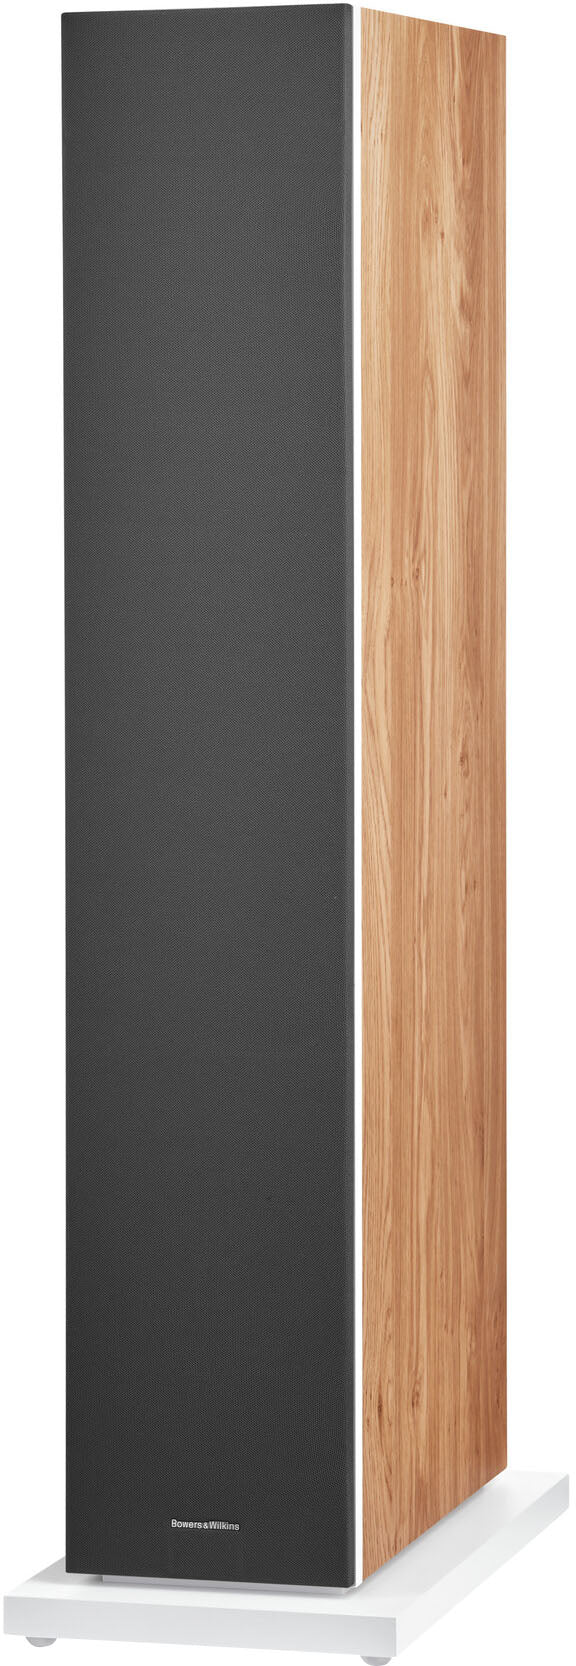 Bowers & Wilkins - 600 S3 Series 3-Way Floorstanding Loudspeaker (Each) - Oak_1